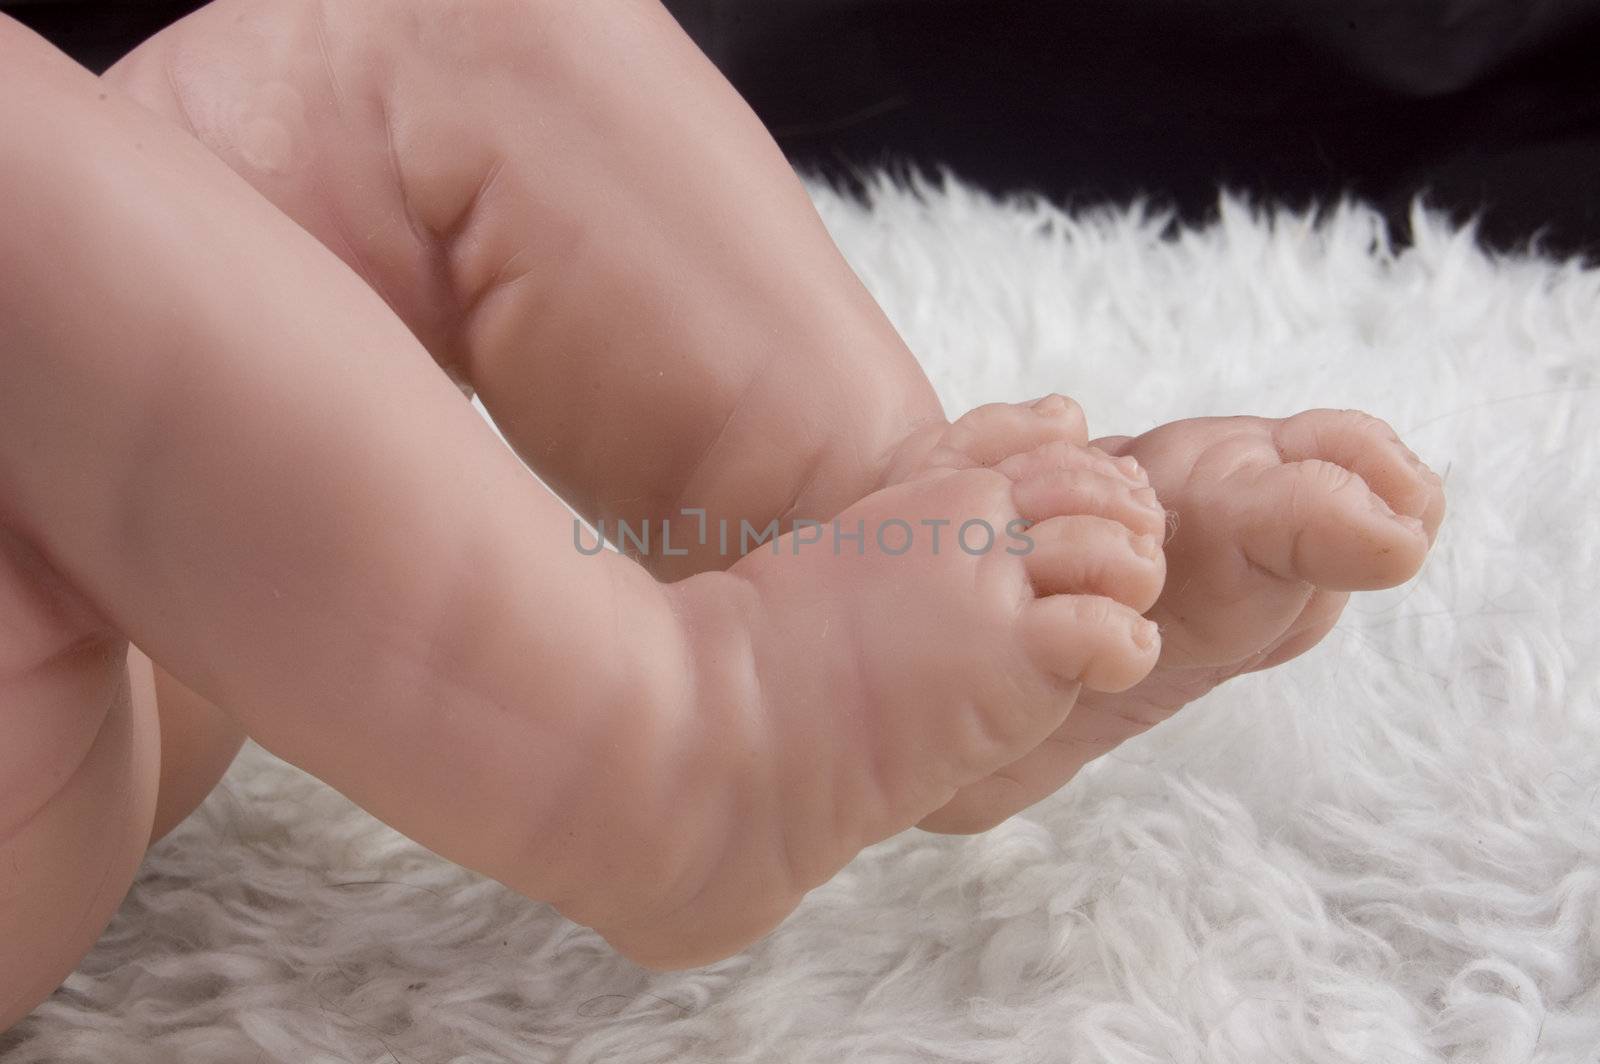 plastic baby feet by ladyminnie